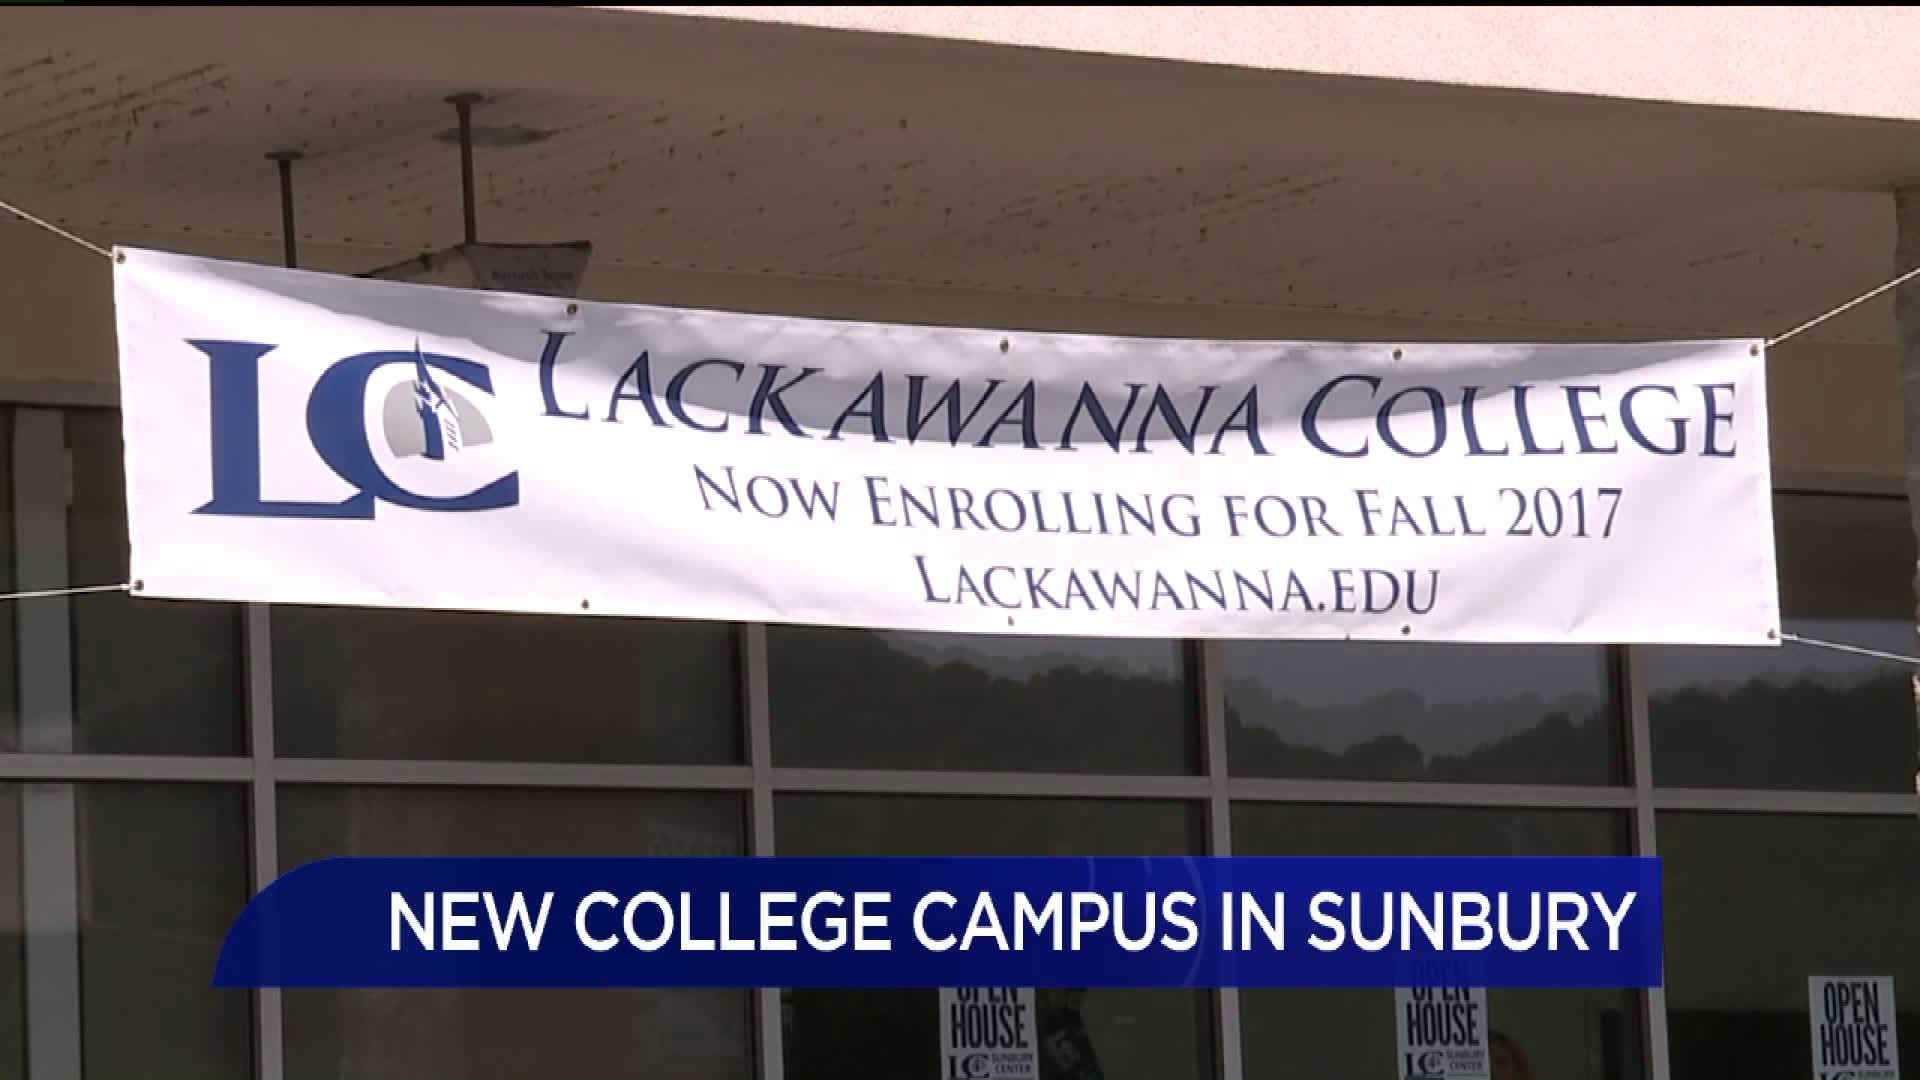 New College Campus in Sunbury